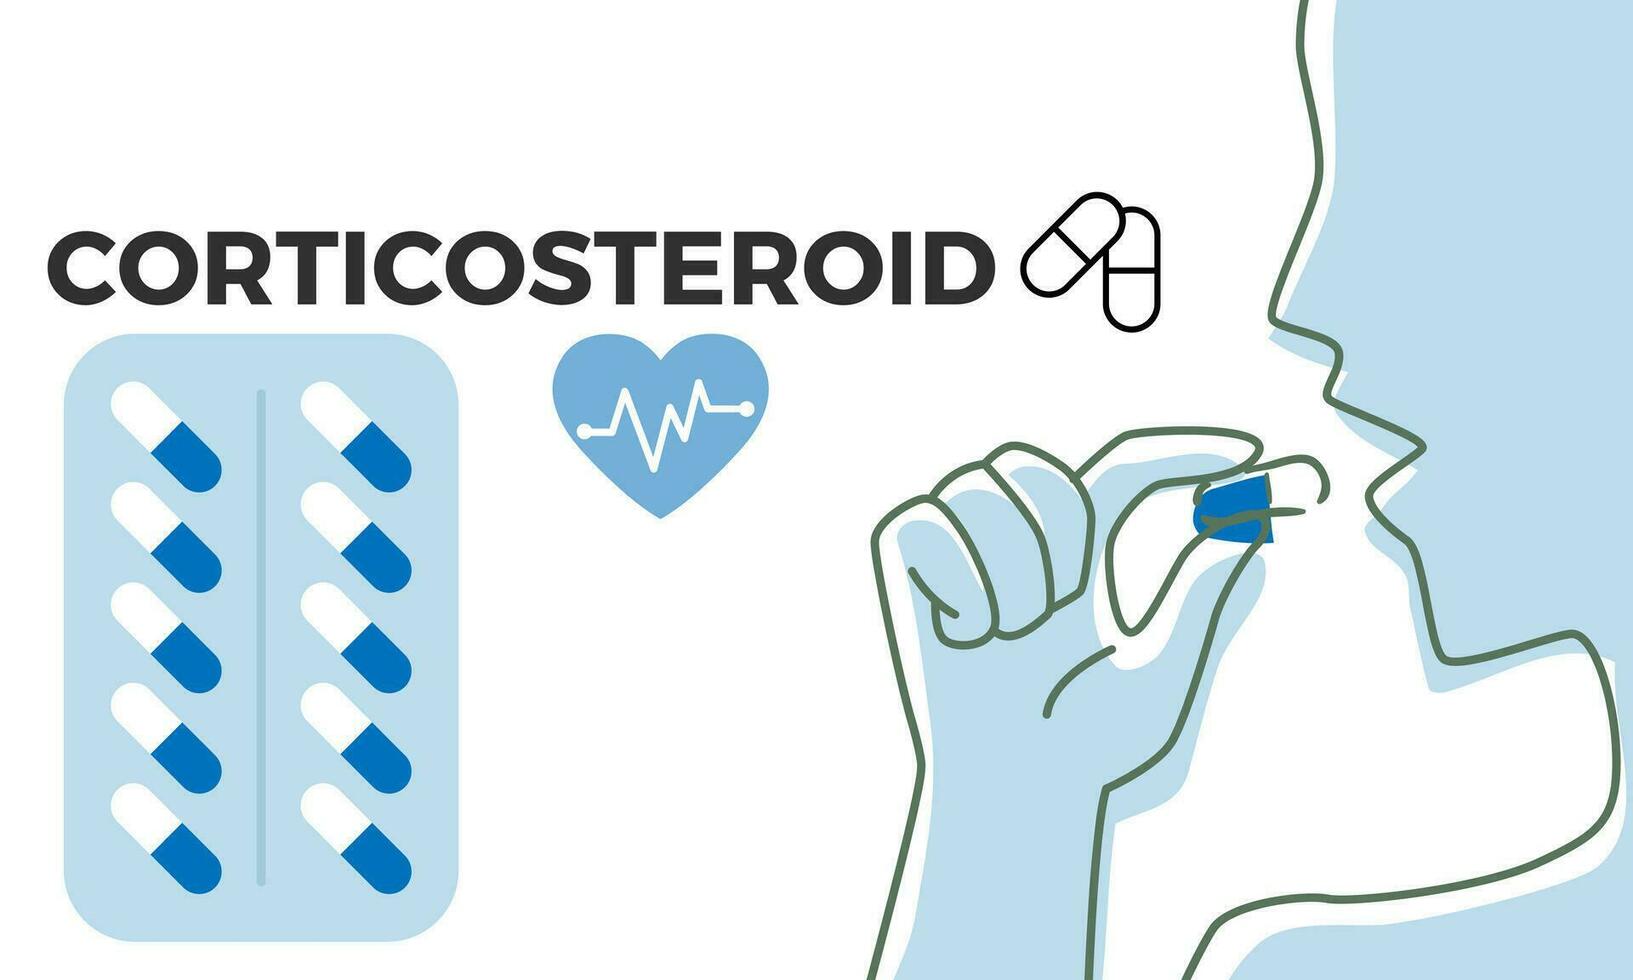 kortikosteroid. kortikosteroid medicinsk piller i rx recept läkemedel flaska vektor illustration